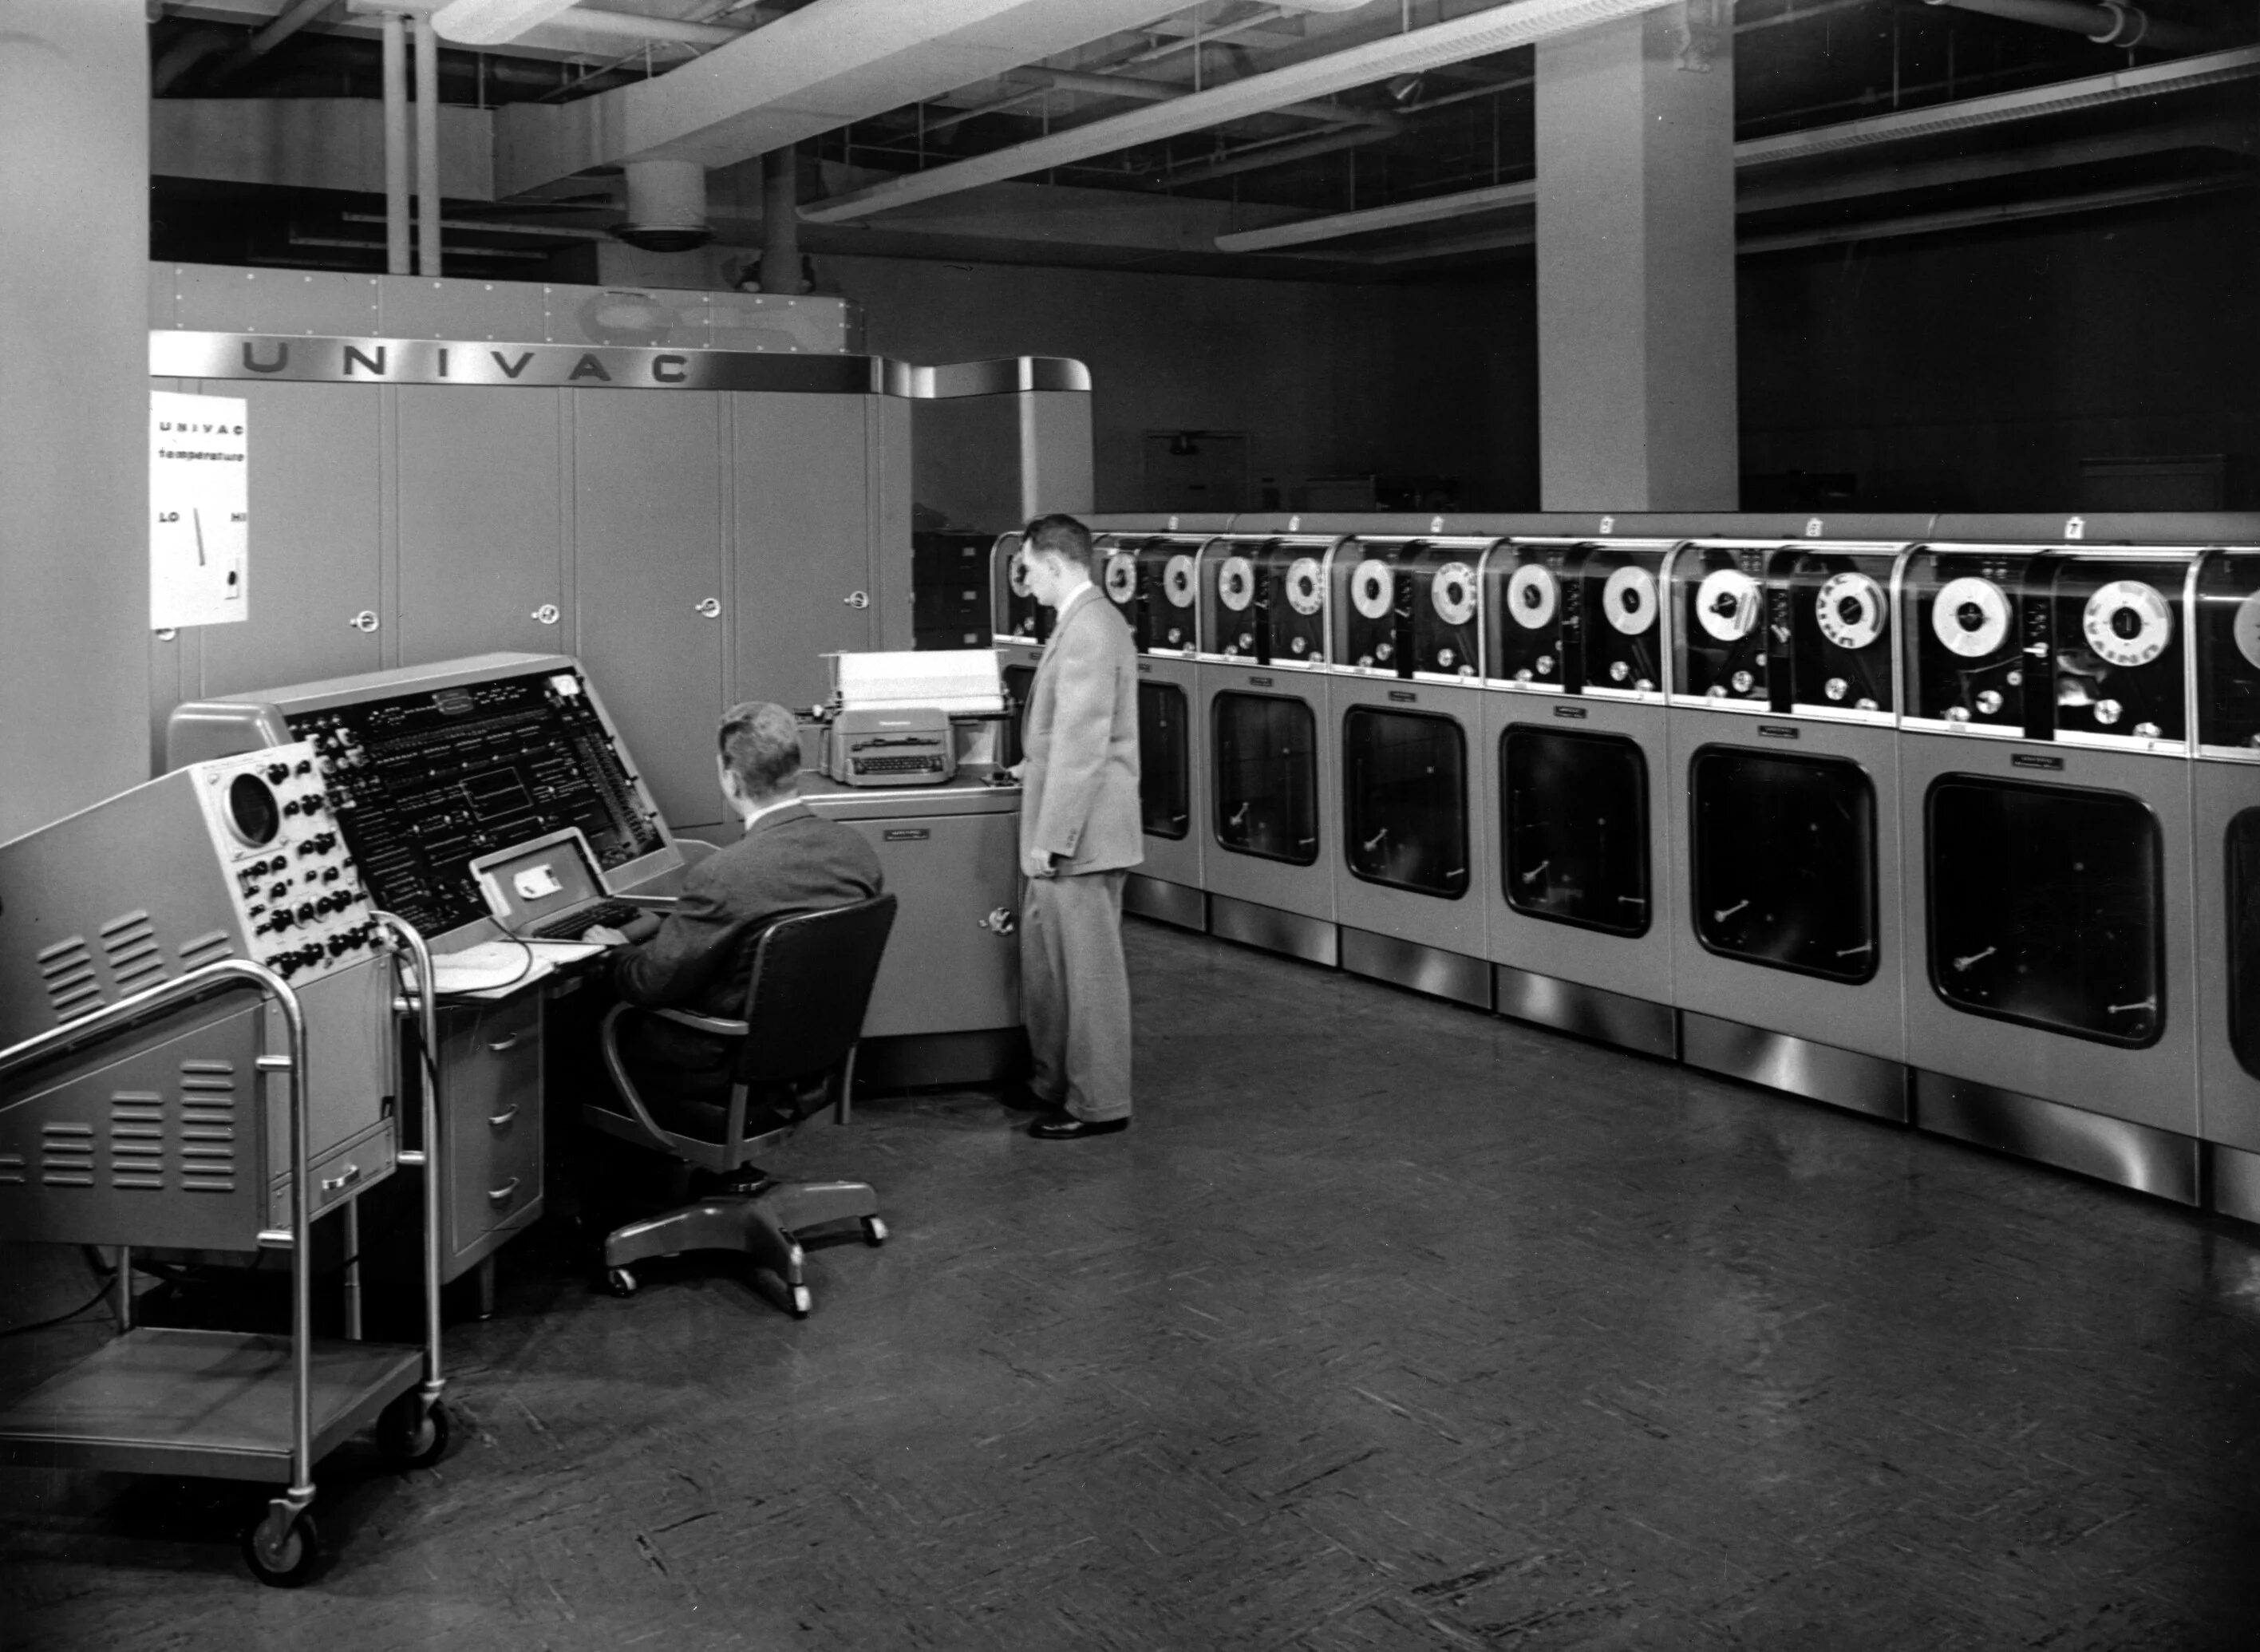 Поколение v 1. Юнивак 1951. UNIVAC ЭВМ 1951. 1 Поколение ЭВМ UNIVAC. UNIVAC И Binac 1948.